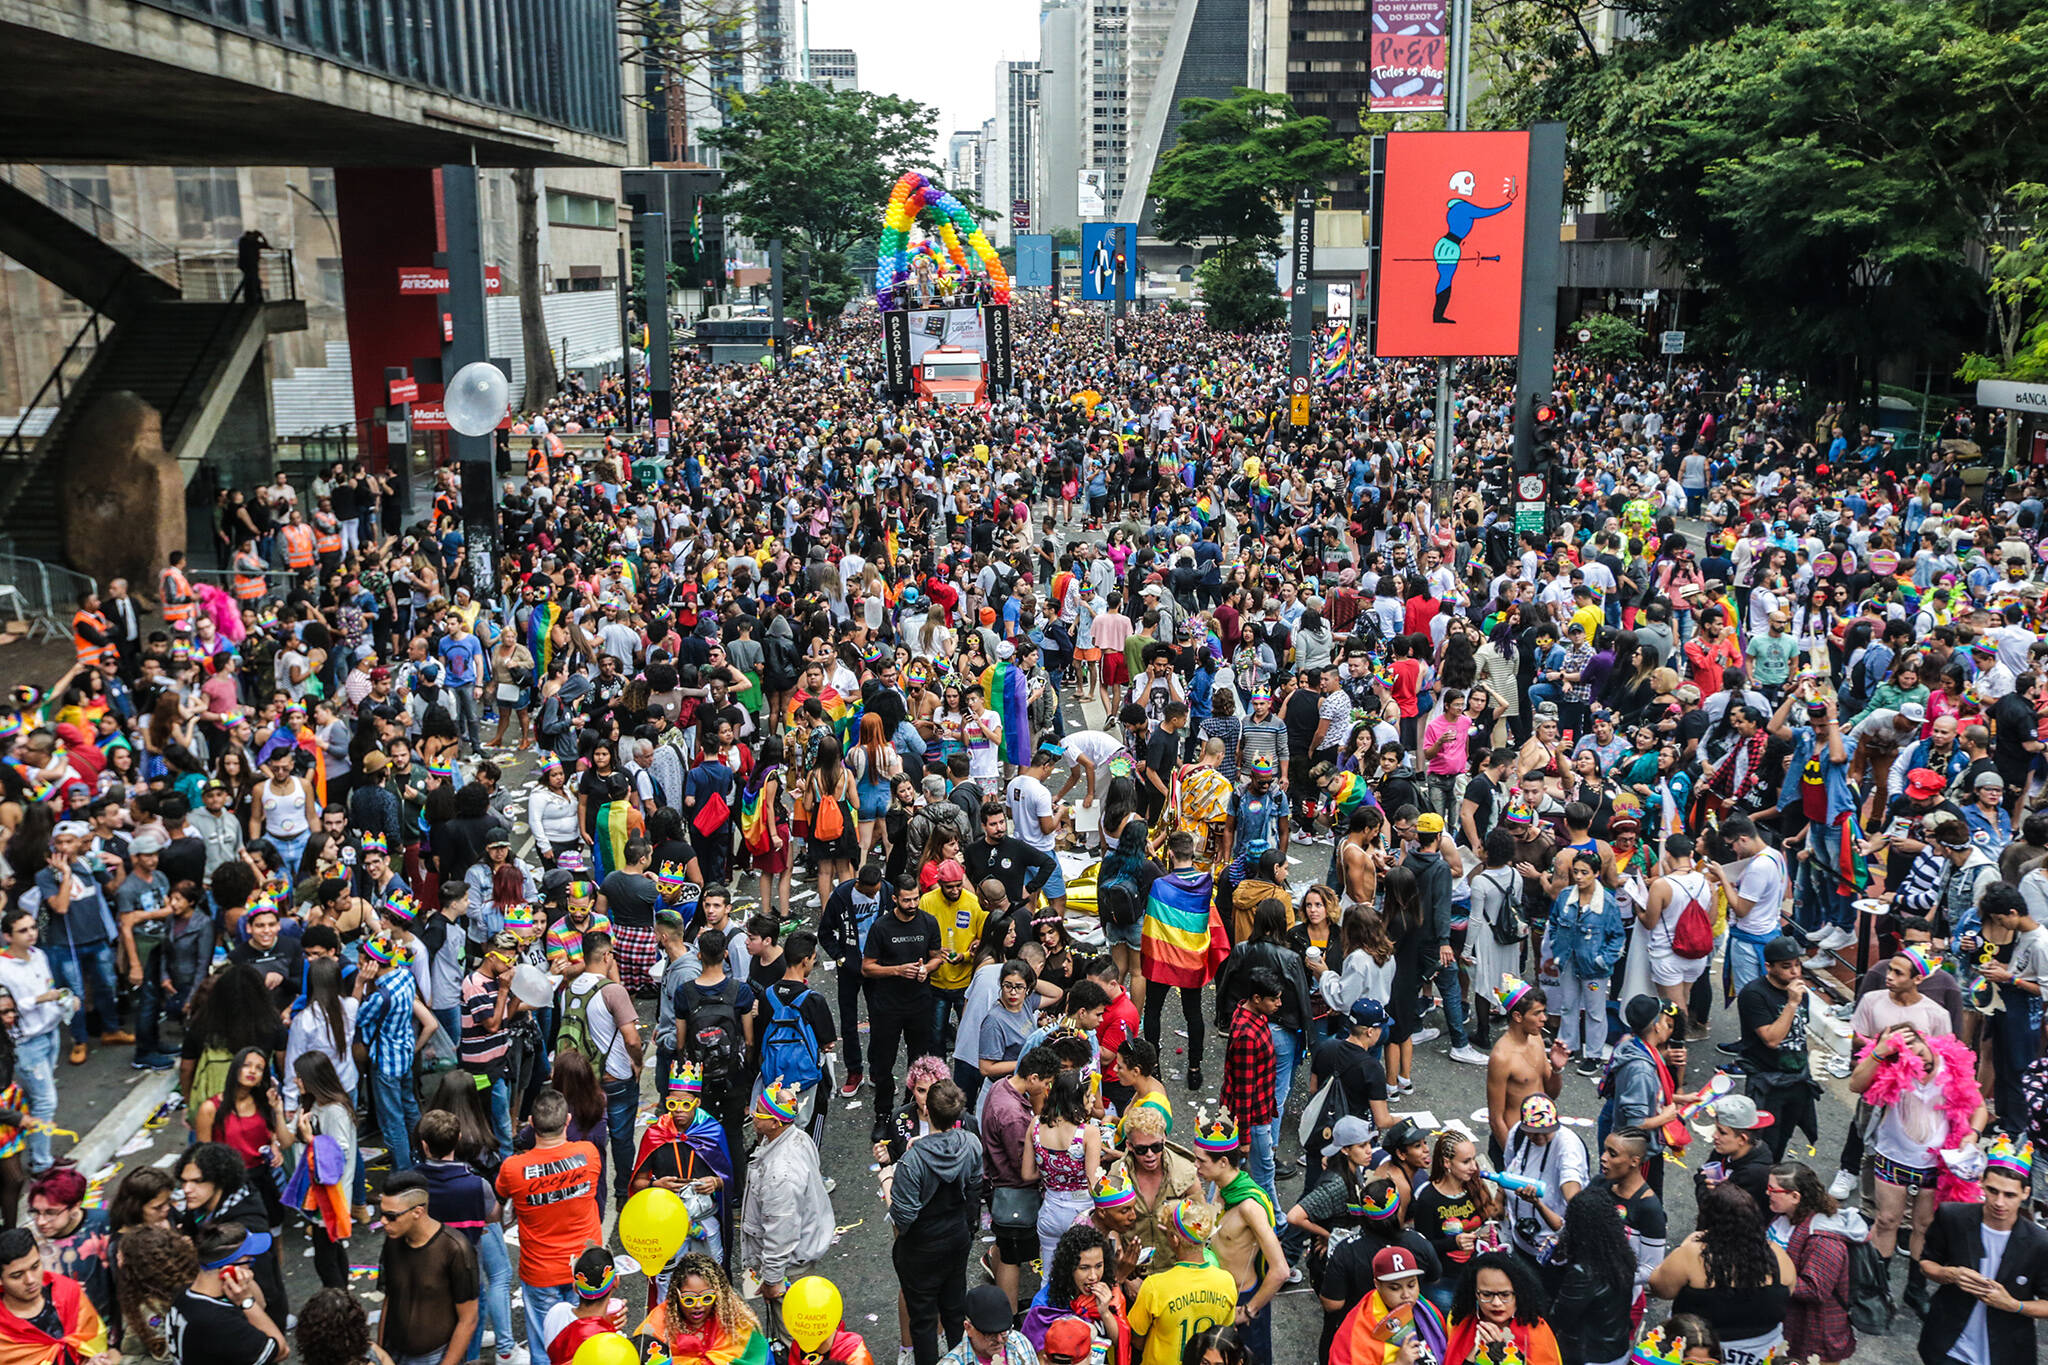 De acordo com a organização oficial do evento, cerca de três milhões de pessoas estiveram presentes na Parada do Orgulho LGBT 2018. Foto: Paulo Pinto/FotosPublicas 03.06.2018